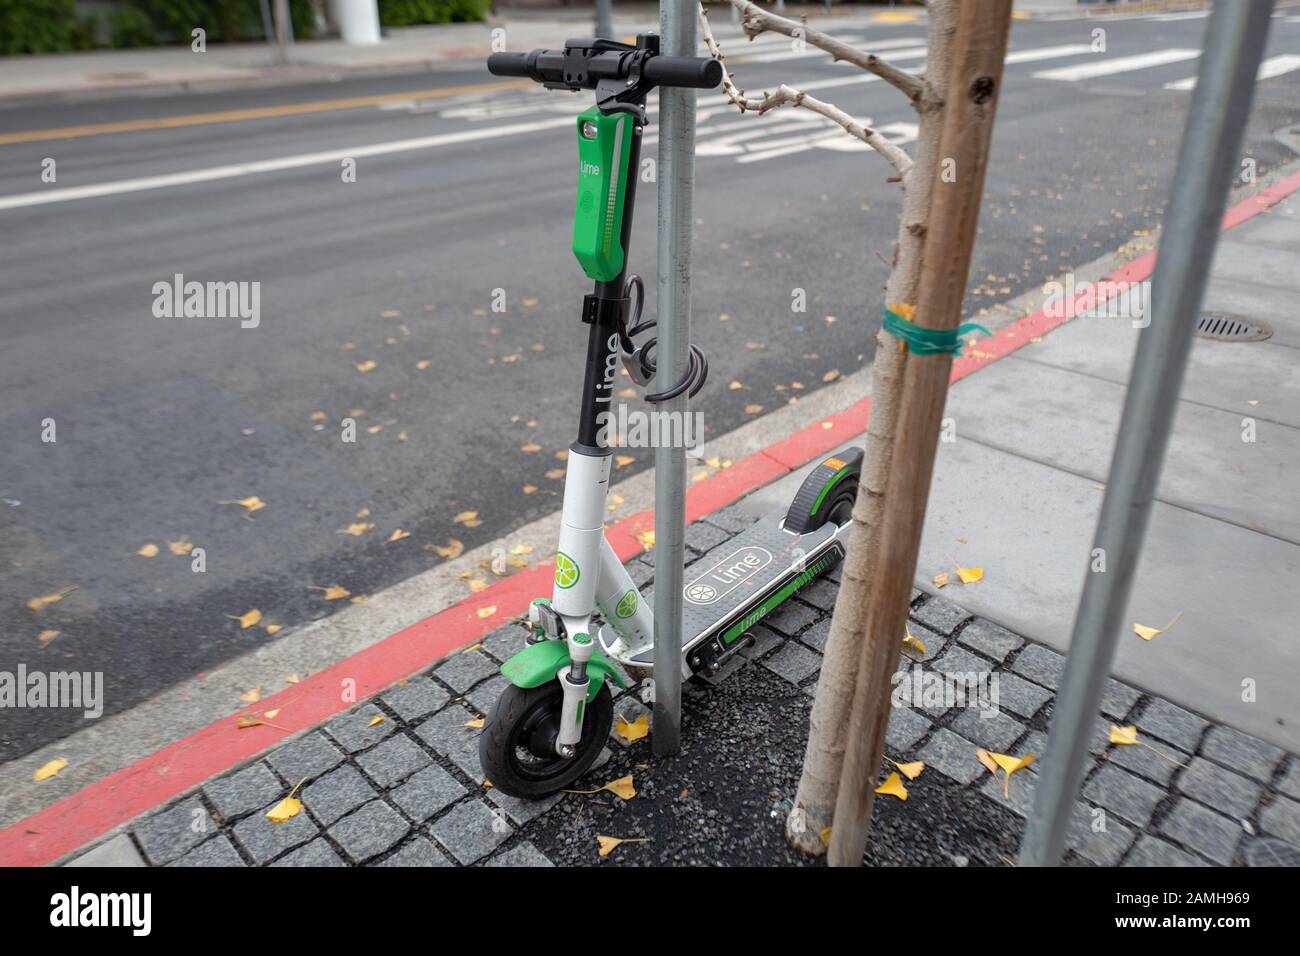 Scooter de micromovilidad de Lime más reciente en el barrio Mission Bay de San Francisco, Californiaa, 5 de diciembre de 2019. () Foto de stock